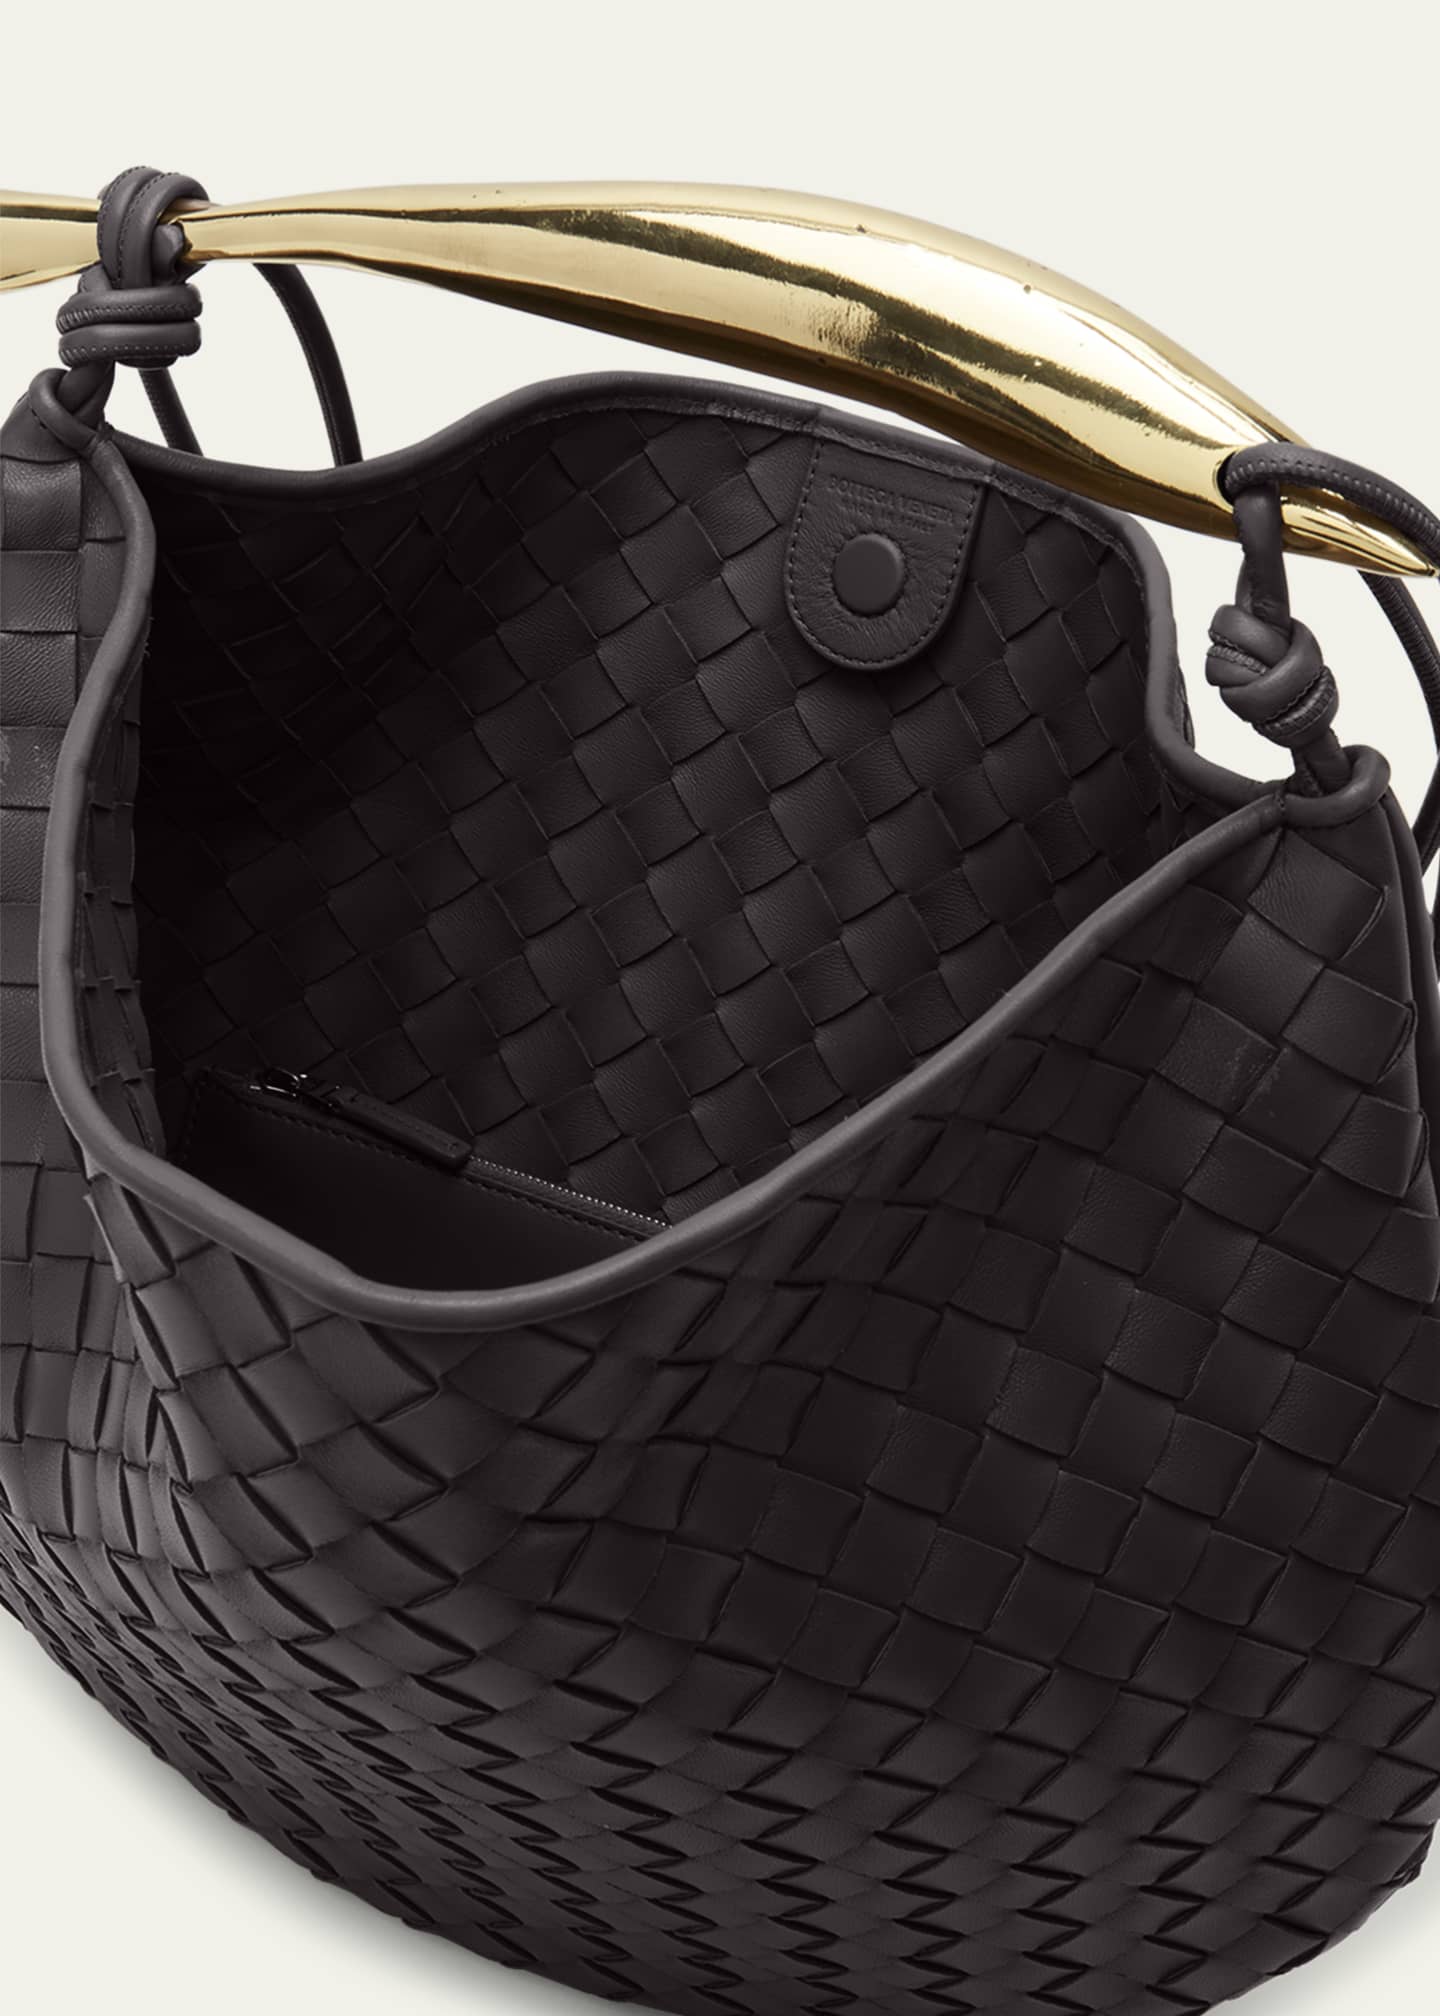 Luxury Knot Woven Shoulder Bag Large Leather Bag Sardine 